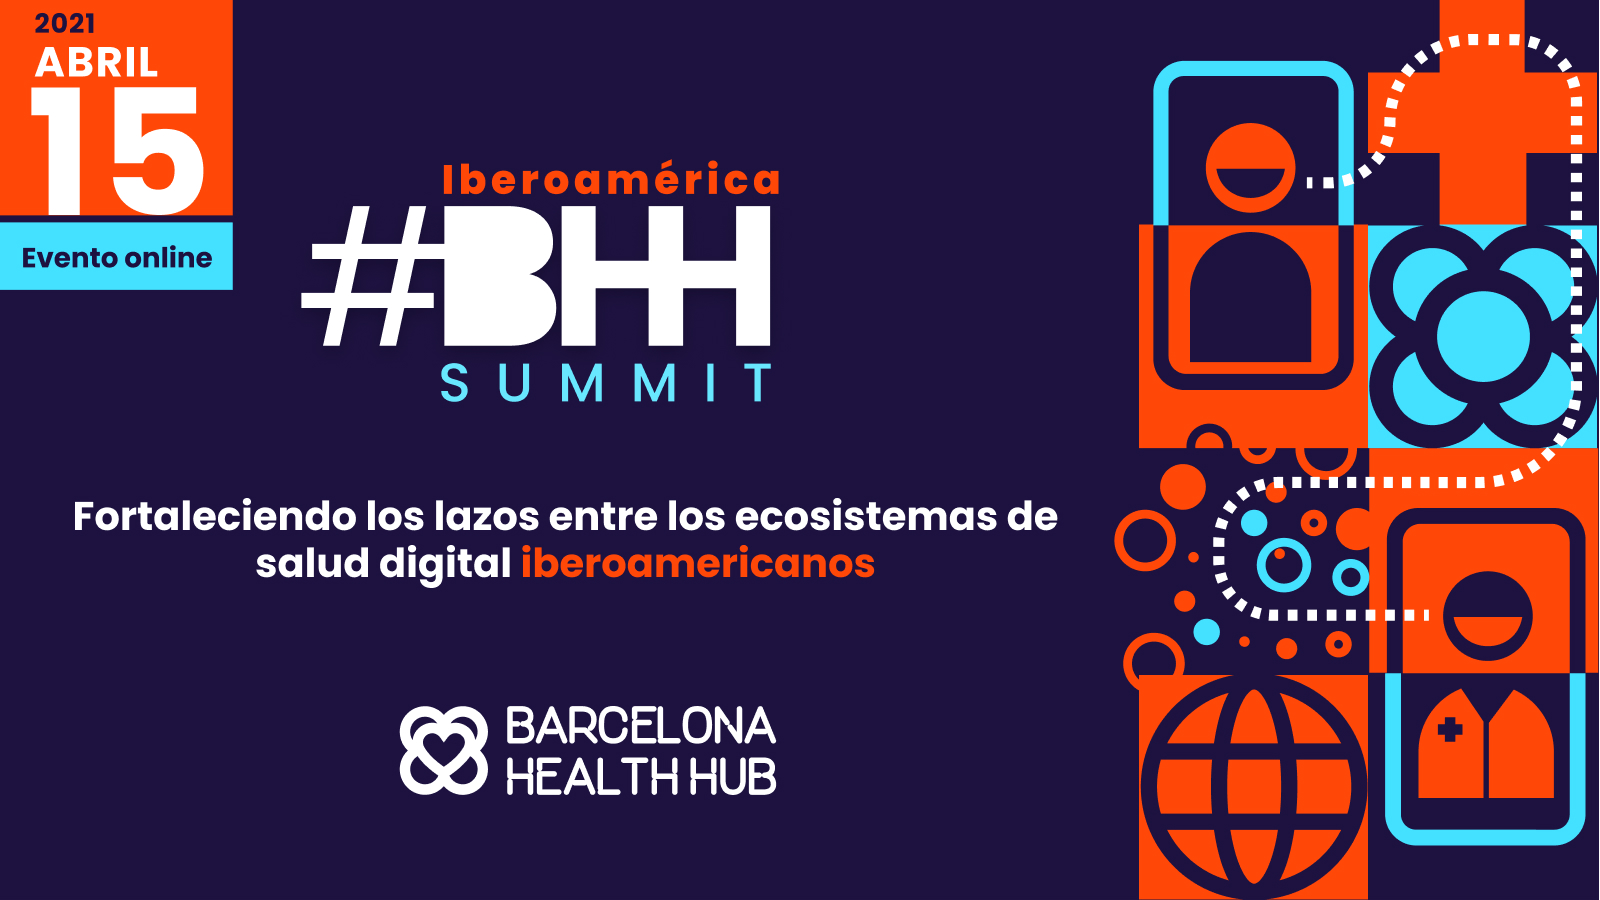 Barcelona Health Hub realizará Summit sobre ecosistemas de salud digital 